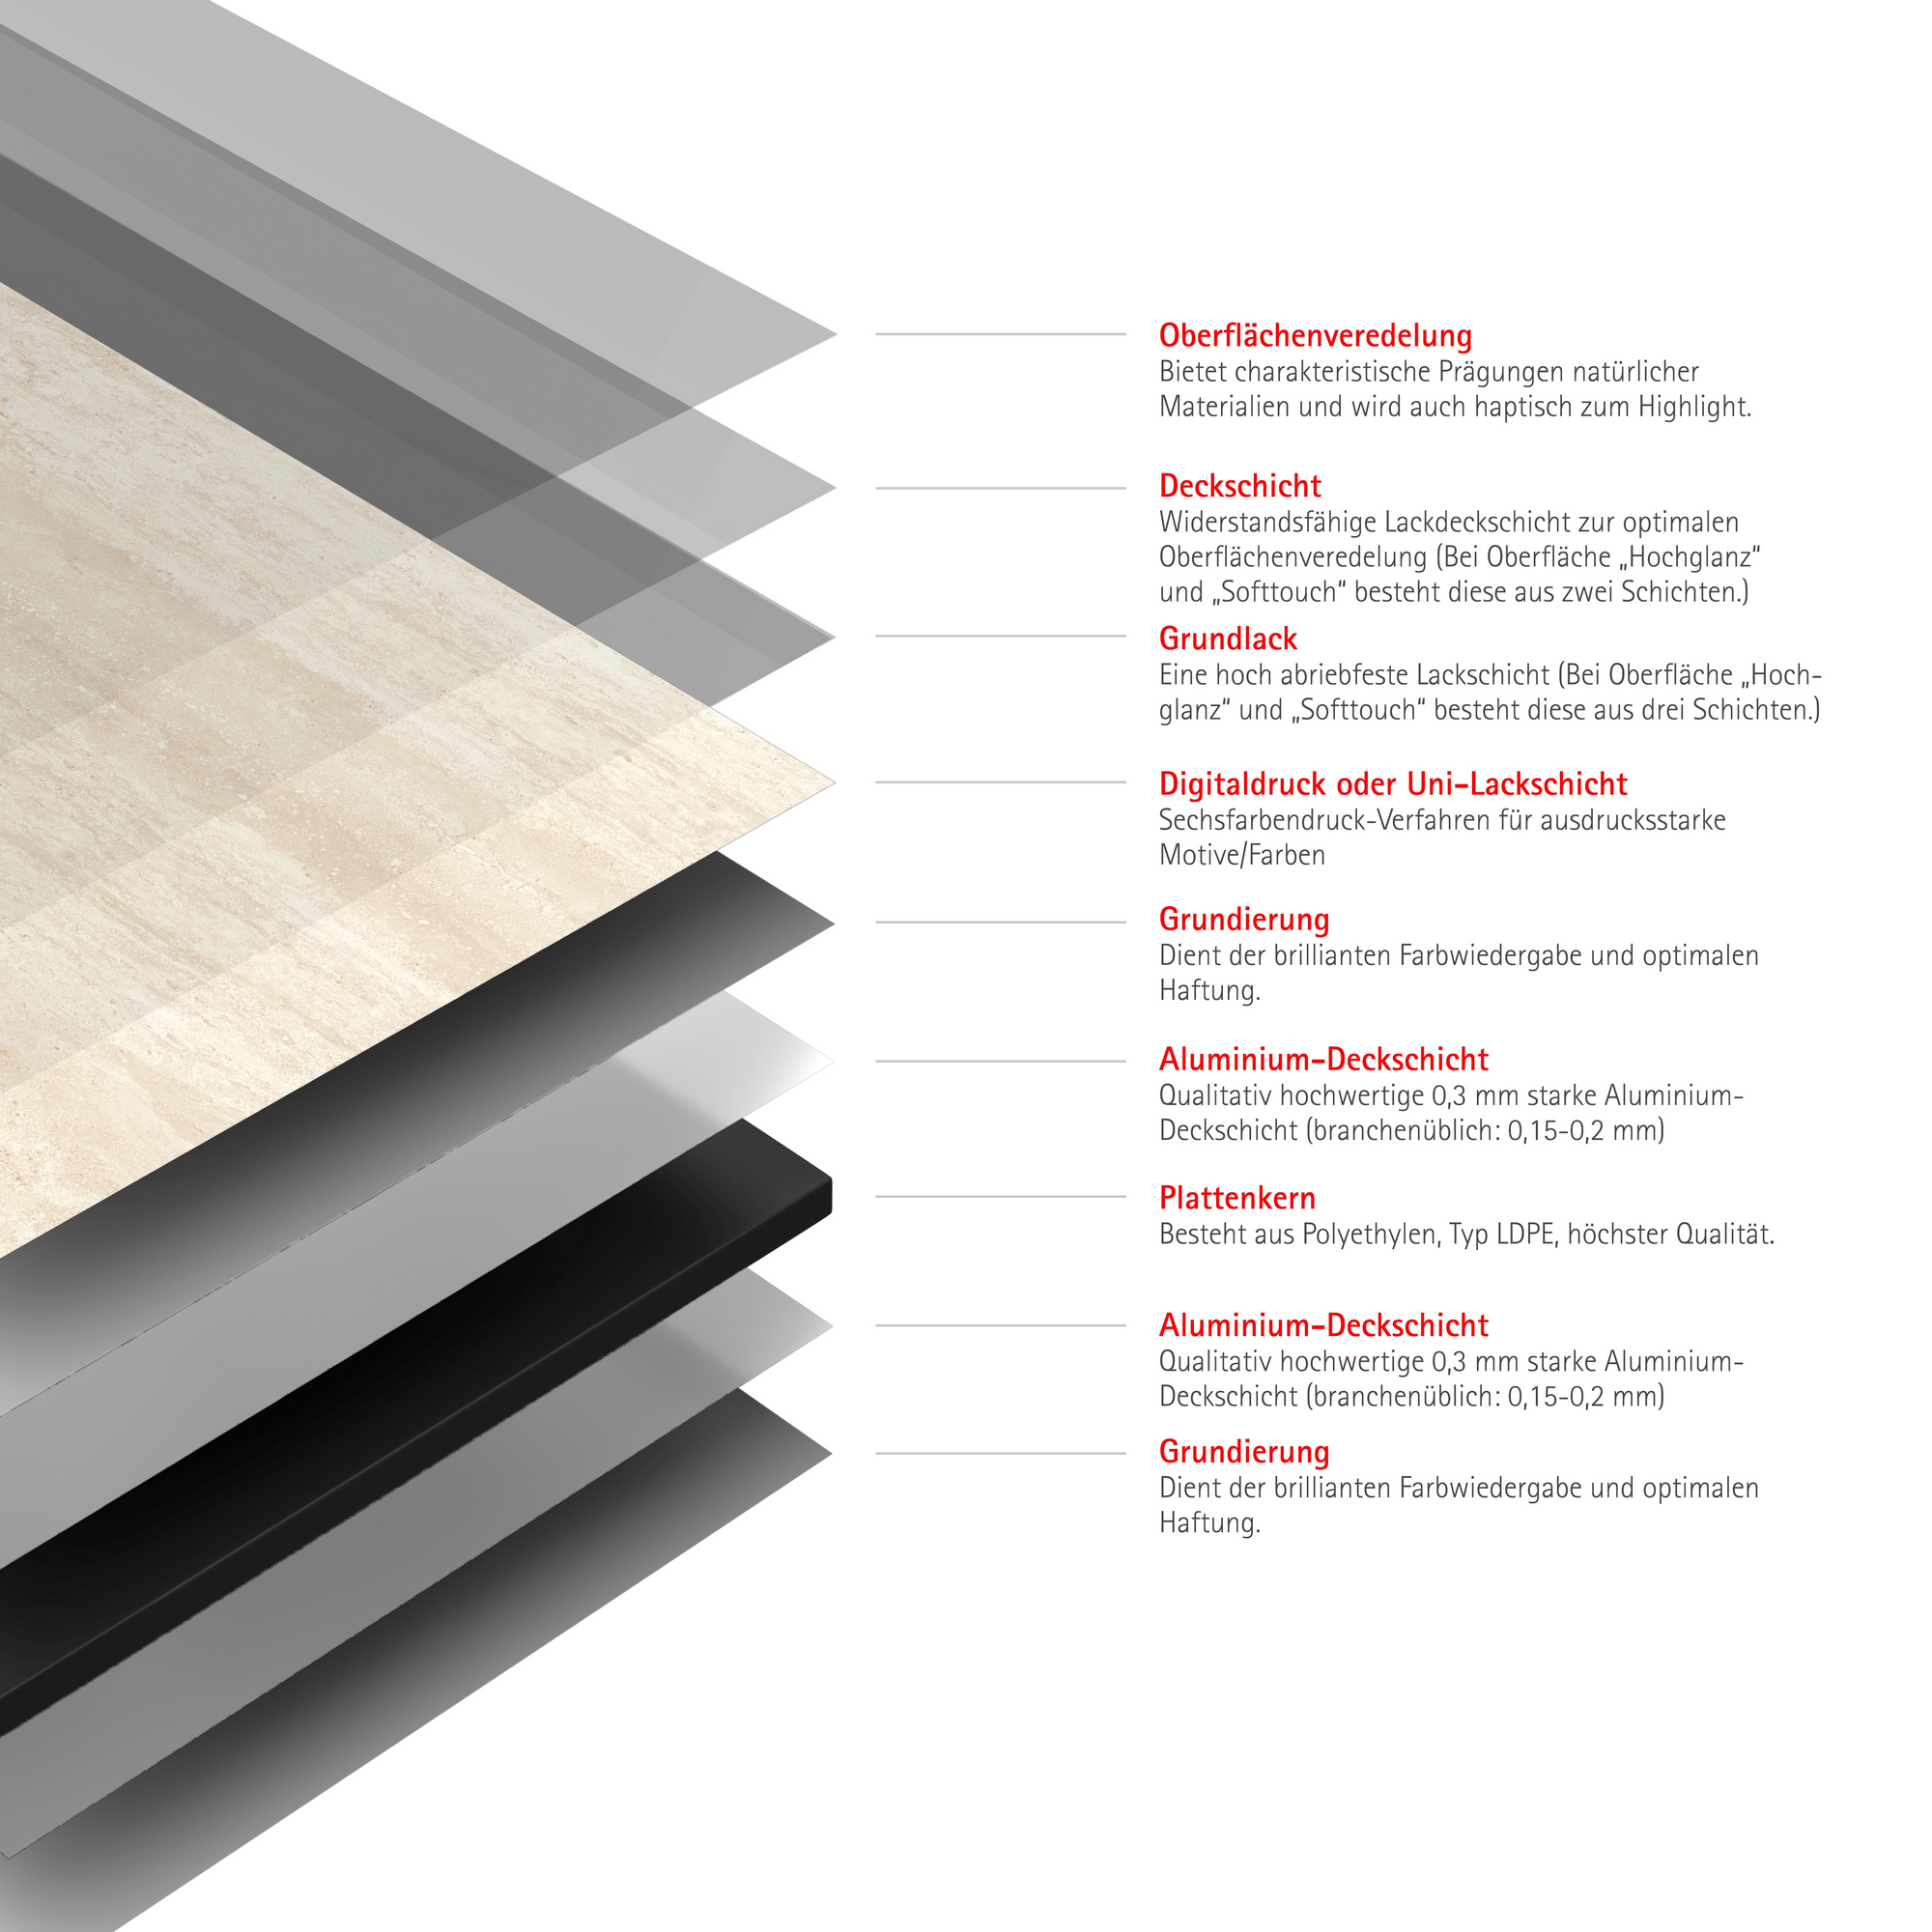 Duschrückwand 'DecoDesign' Softtouch Kalkstein-Beige 150 x 255 cm + product picture